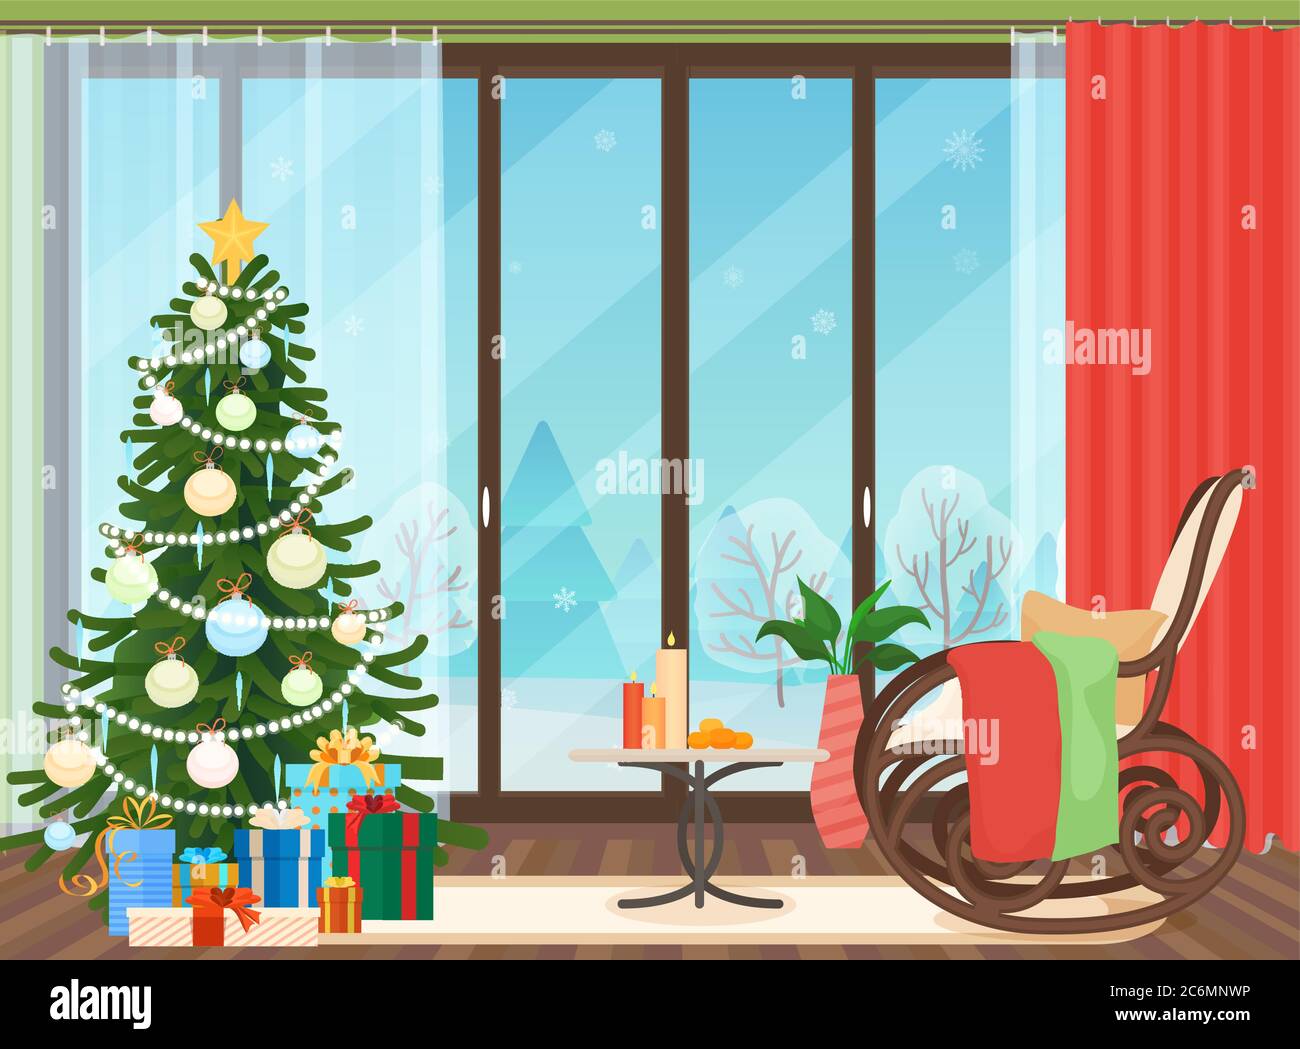 Weihnachten Wohnzimmer Wohnung Innenraum mit Schaukelstuhl Vektor-Illustration. Weihnachtsbaum. Winterlandschaft draußen Stock Vektor